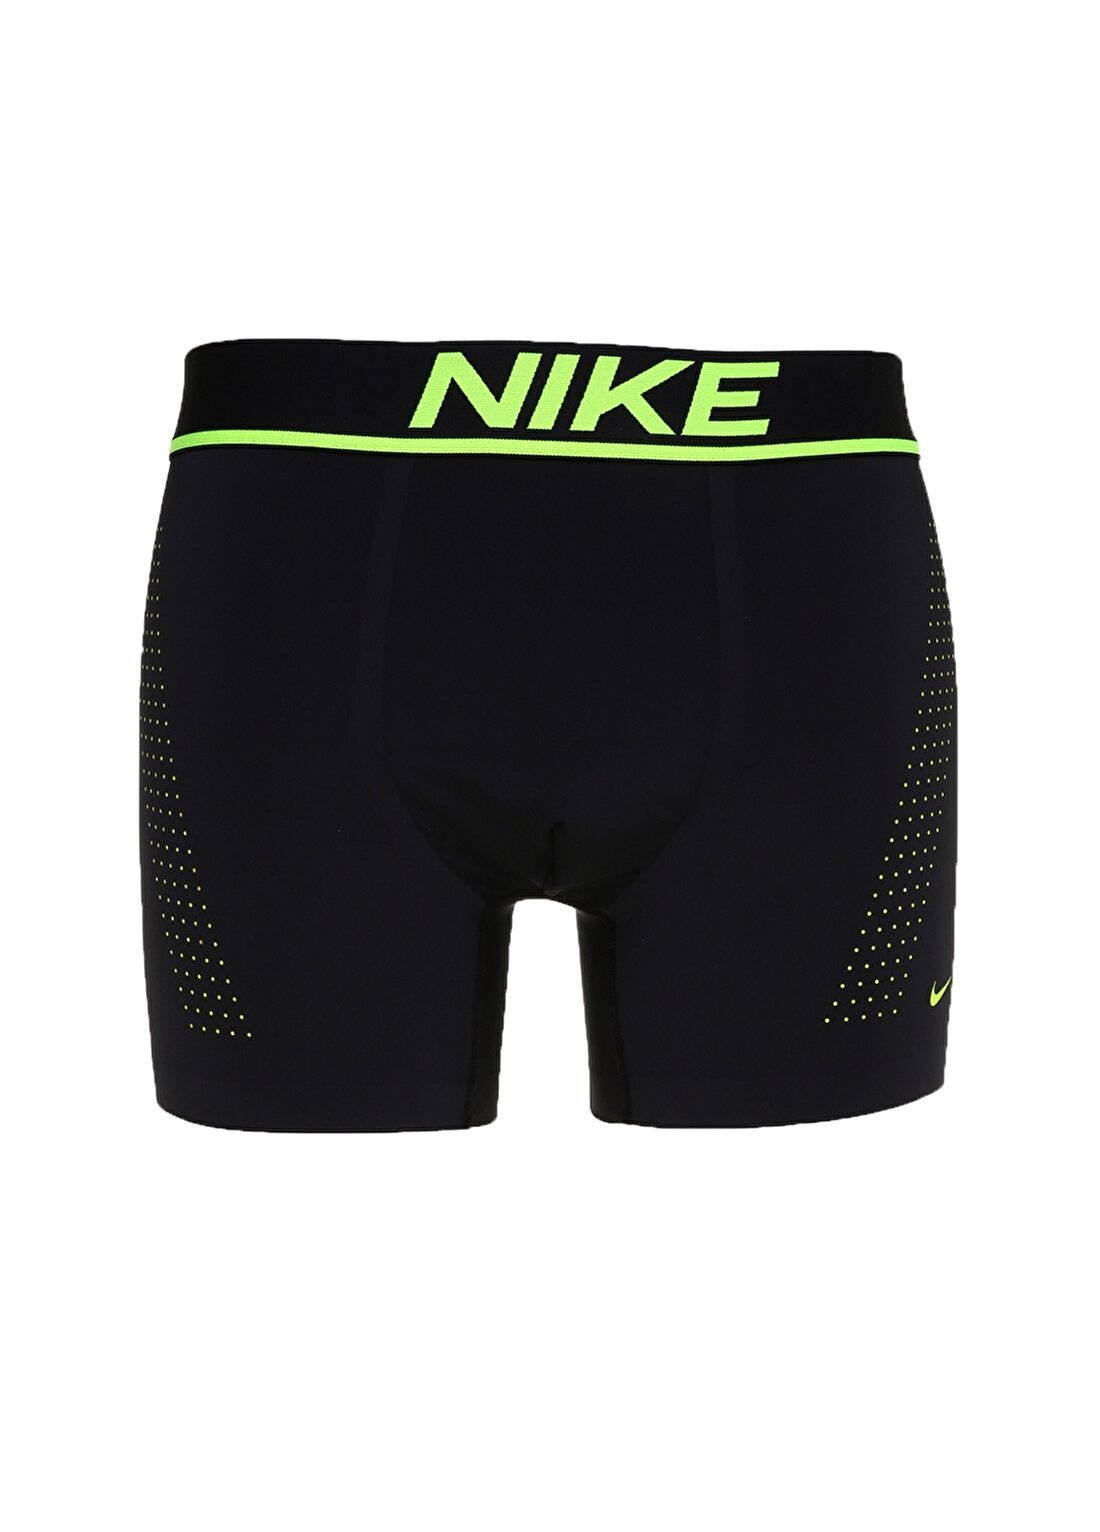 Nike 0000KE1034 Marka Baskılı Renkli Bel Siyah Erkek Boxer